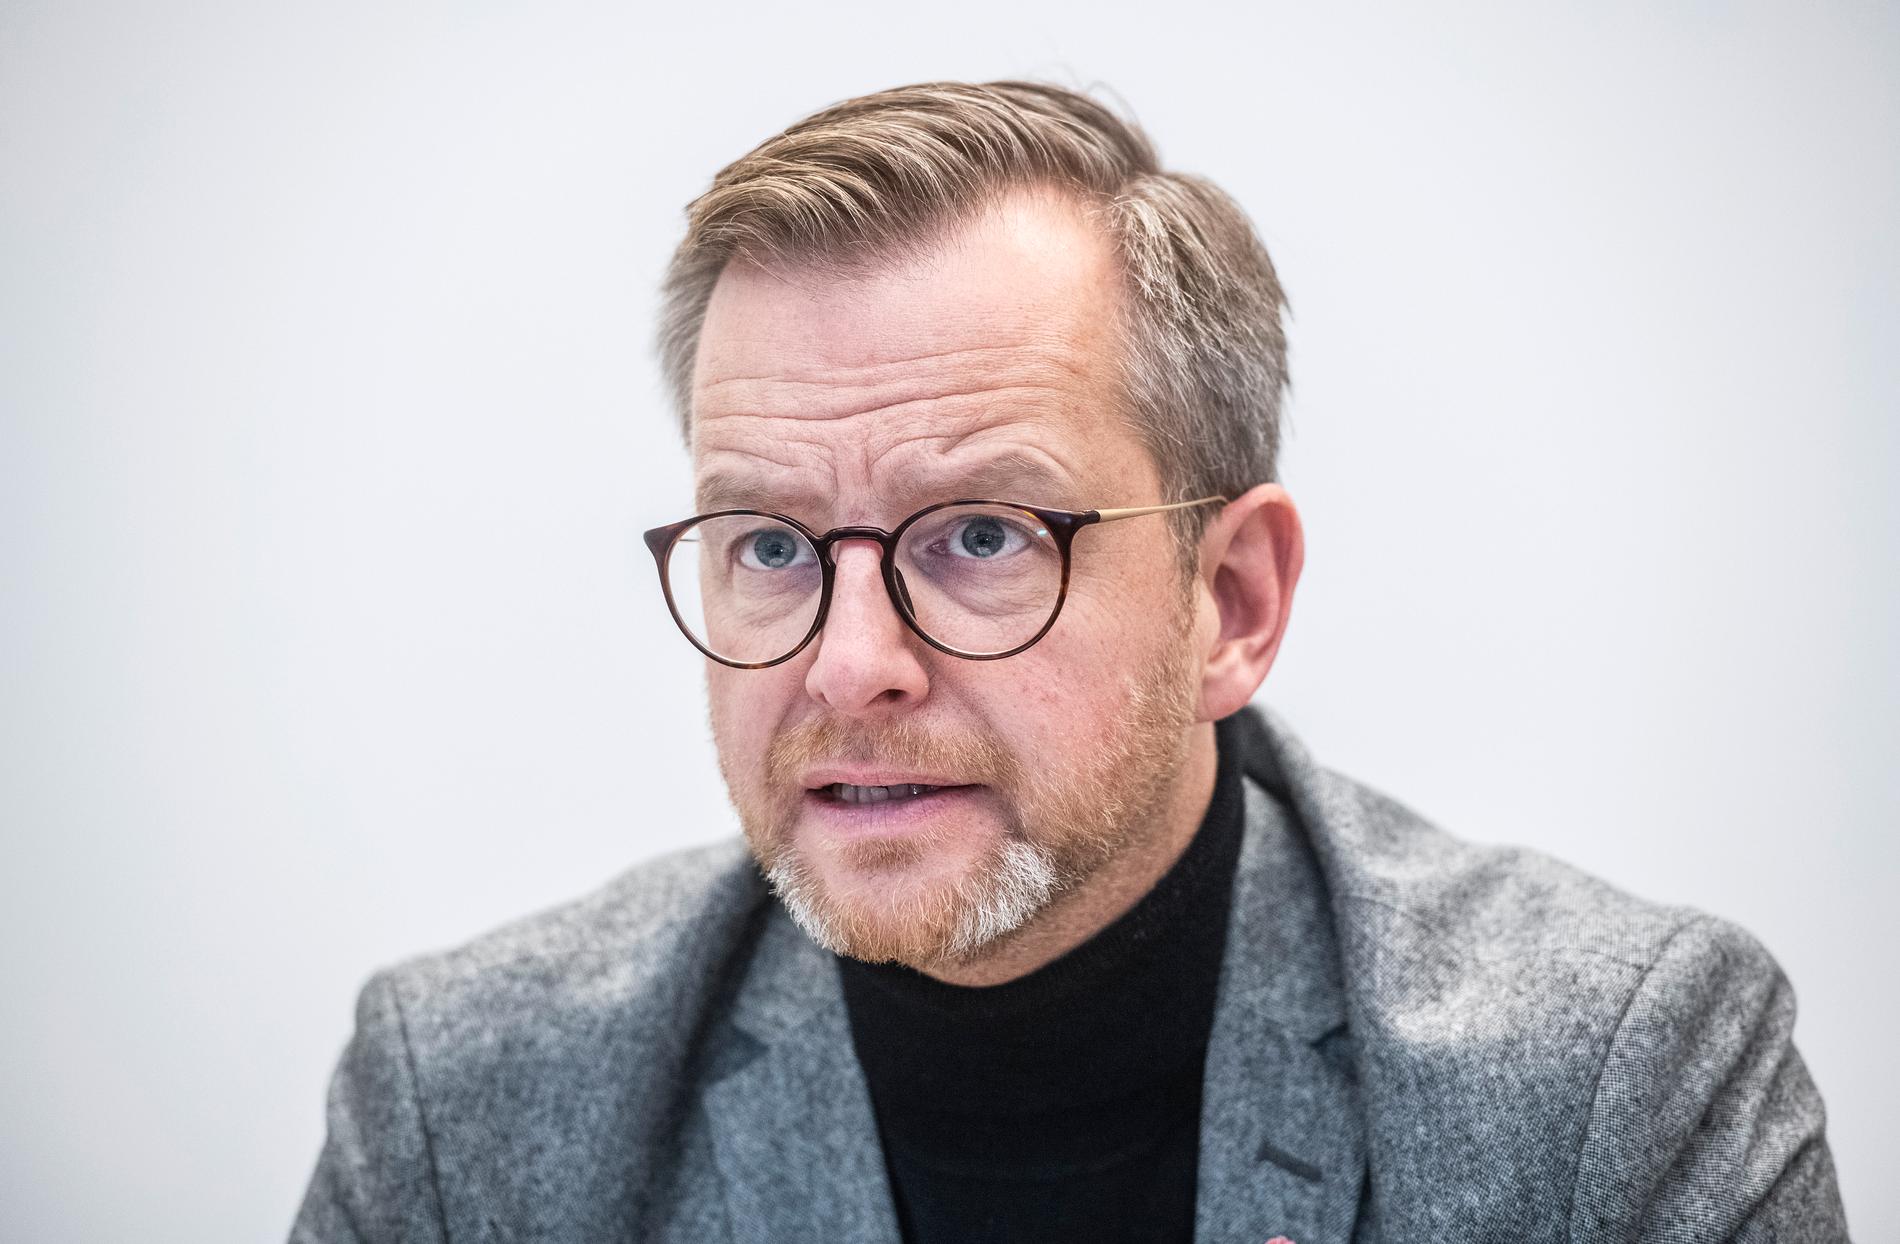 Inrikesminister Mikael Damberg (S) vill se extraordinära insatser efter dödsskjutningen i Malmö. Arkivbild.